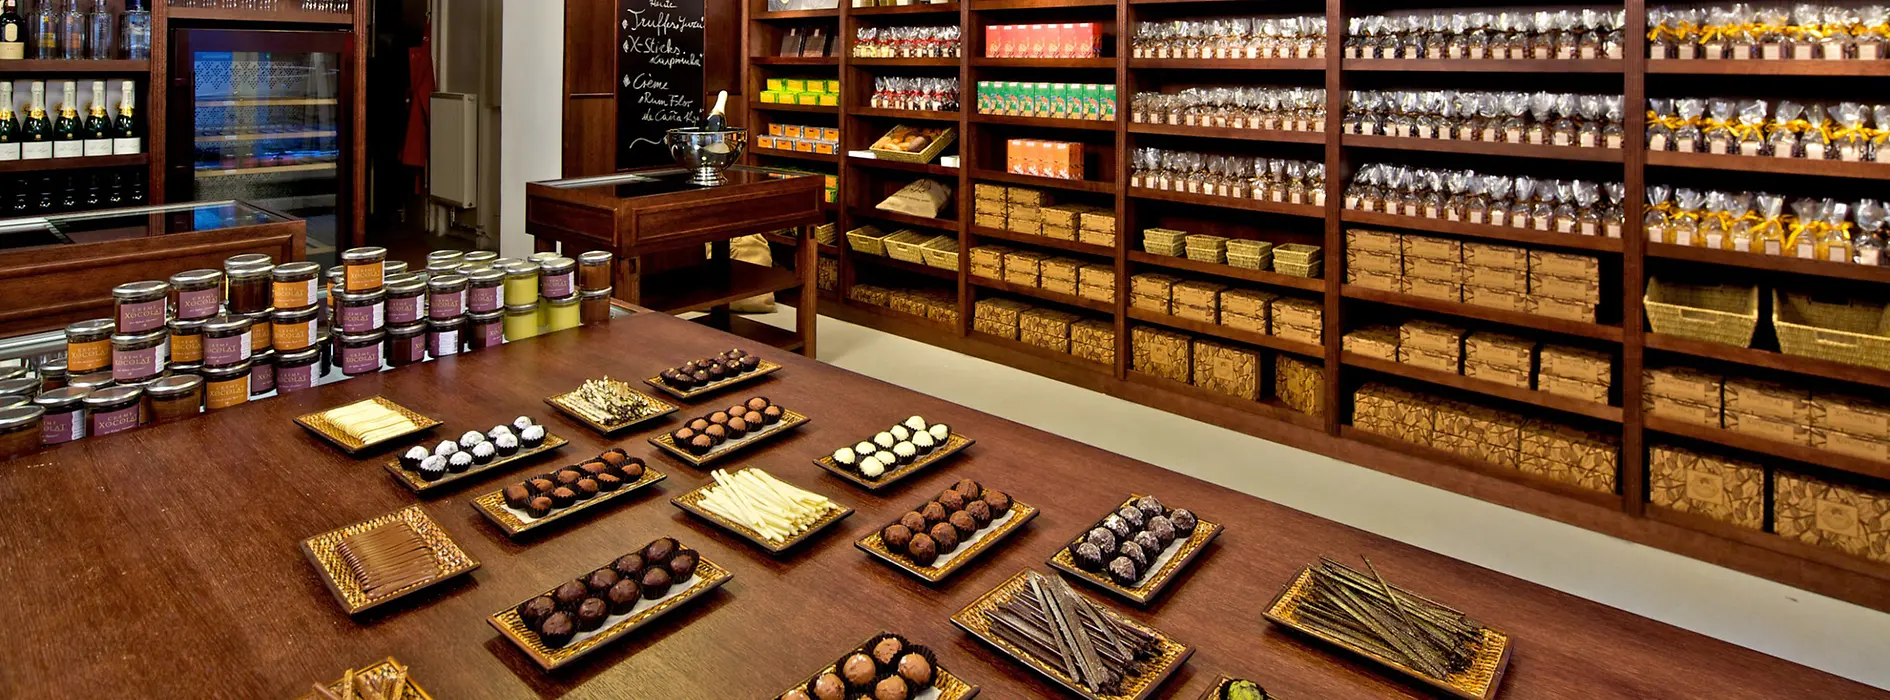 Ассортимент конфет в магазине Шоколадная фабрика «Xocolat» 